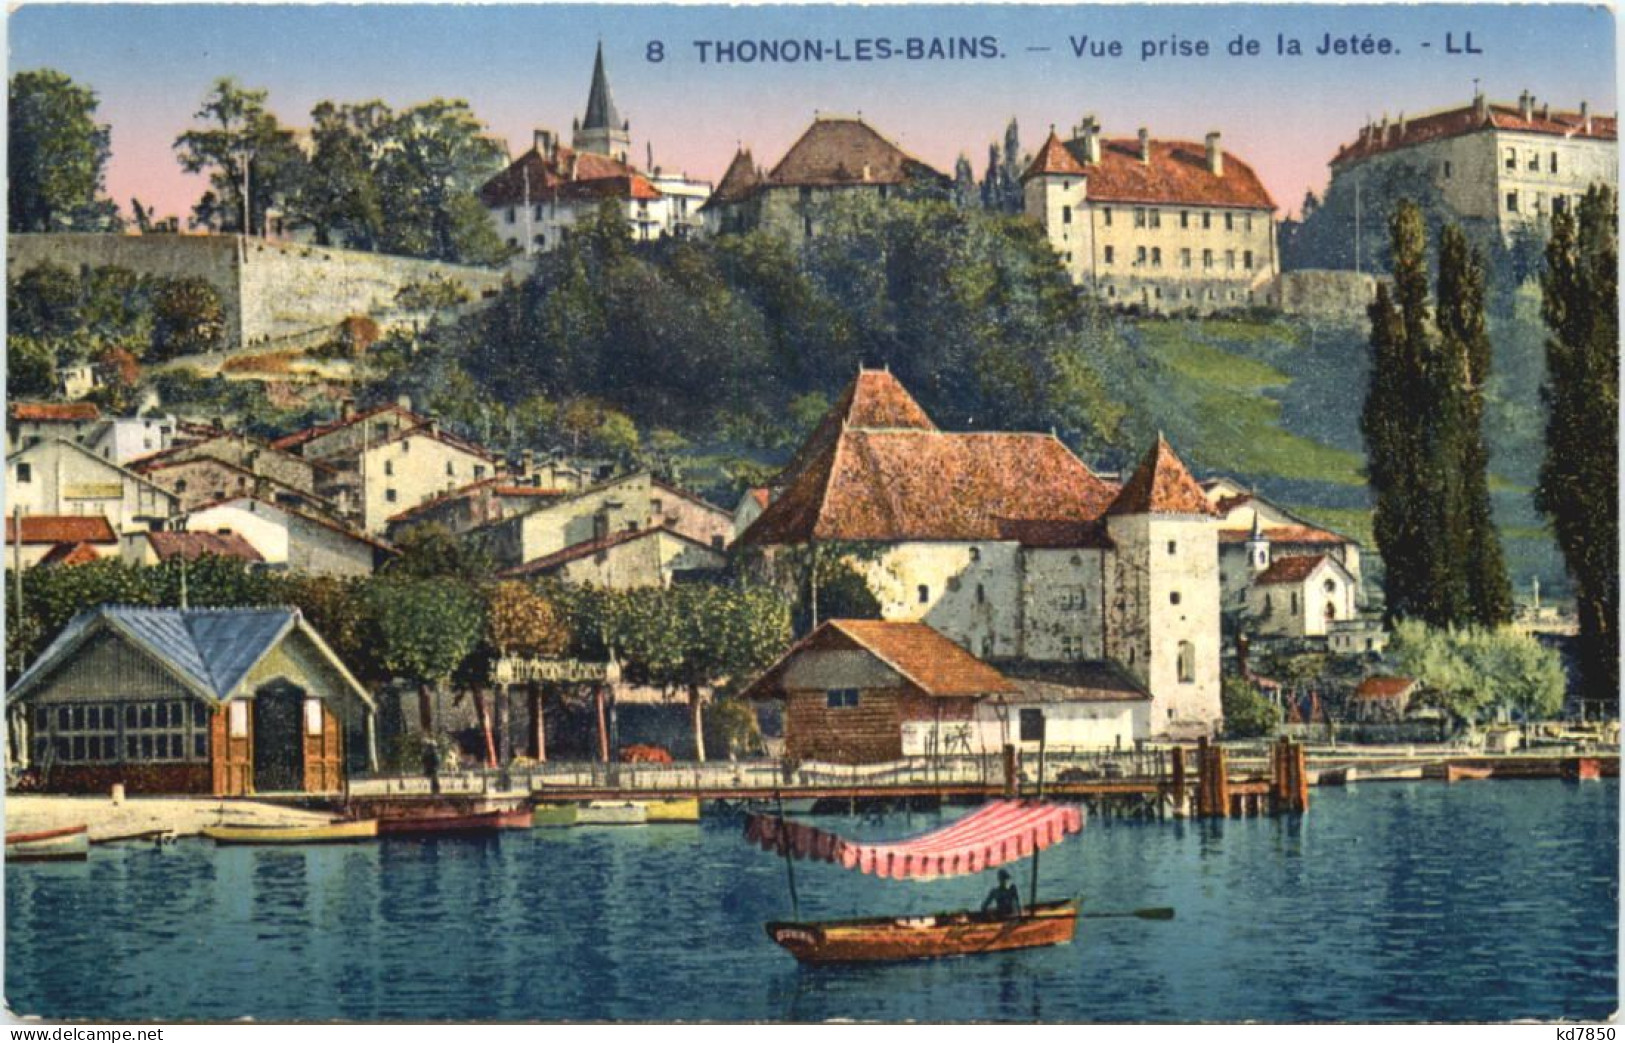 Thonon-les-Bains, Vue Prise De La Jetee - Thonon-les-Bains